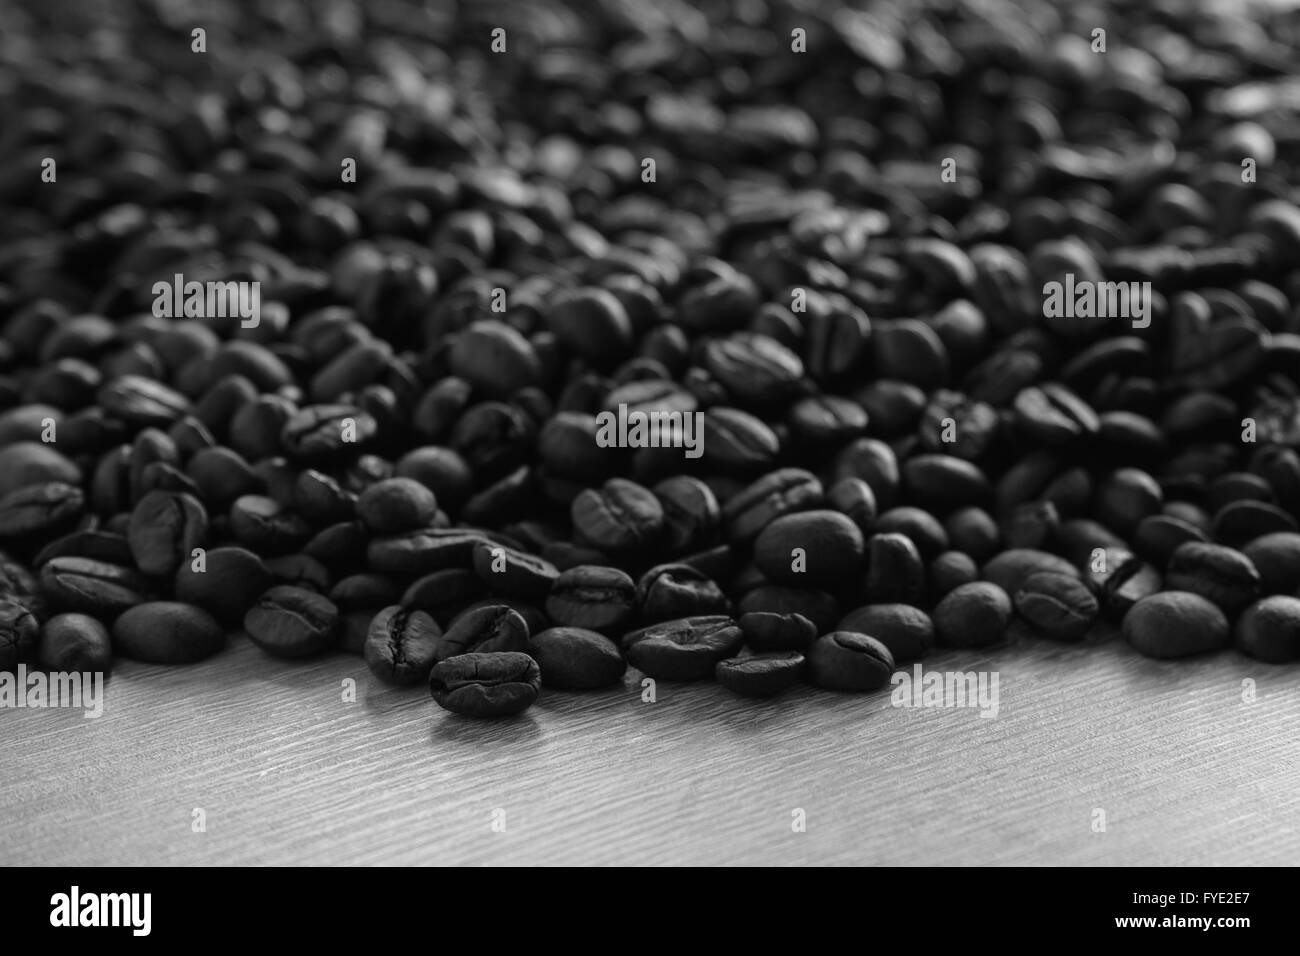 Abstrakte Closeup Kaffeebohnen auf hölzernen Hintergrund mit selektiven Fokus auf vorderen Bohnen, schwarz / weiß Bild Stockfoto